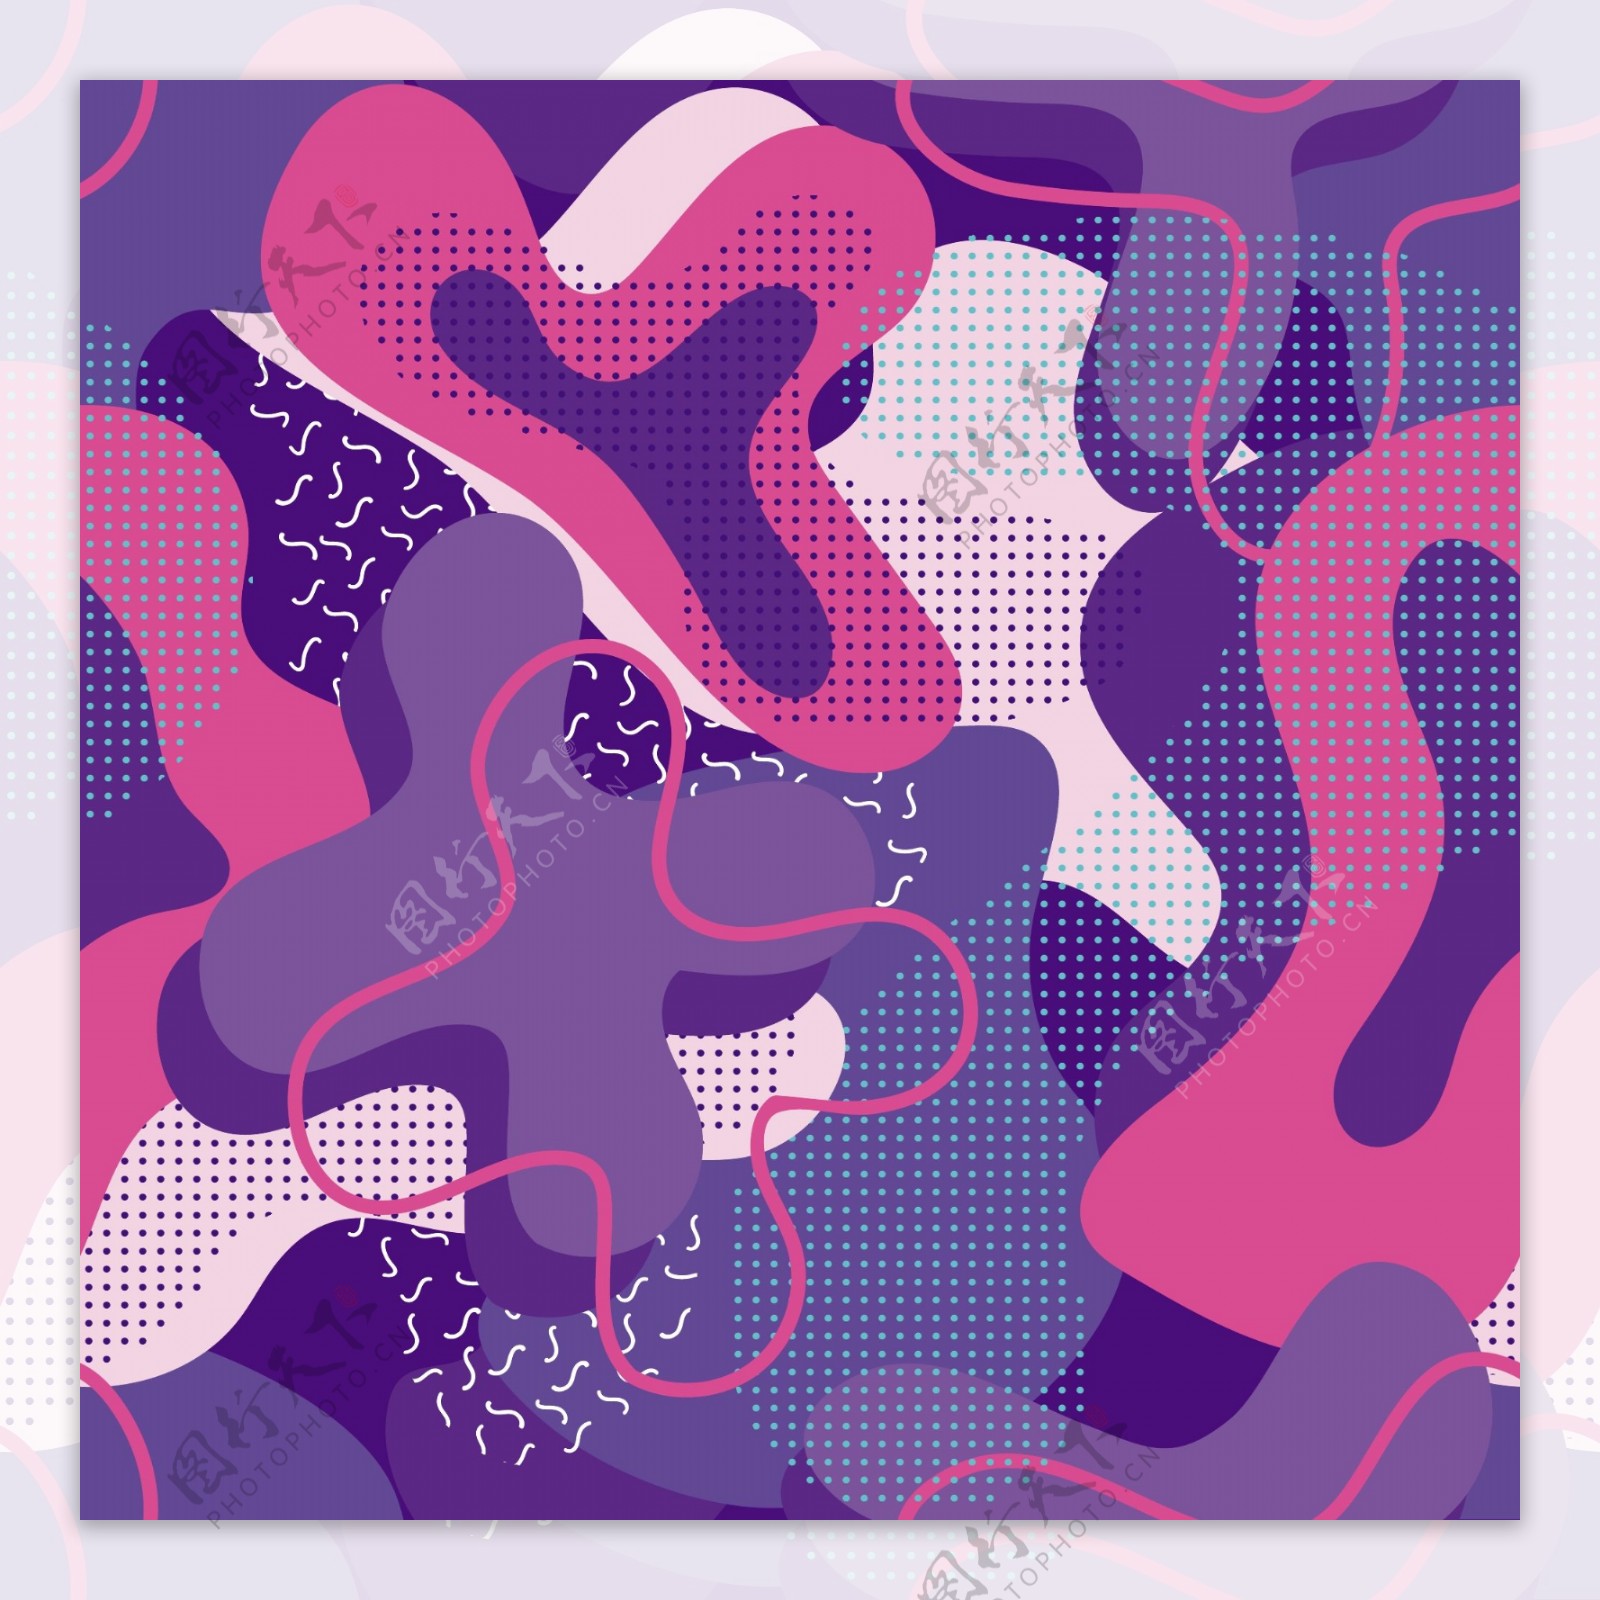 深紫色几何扭曲背景图案矢量素材